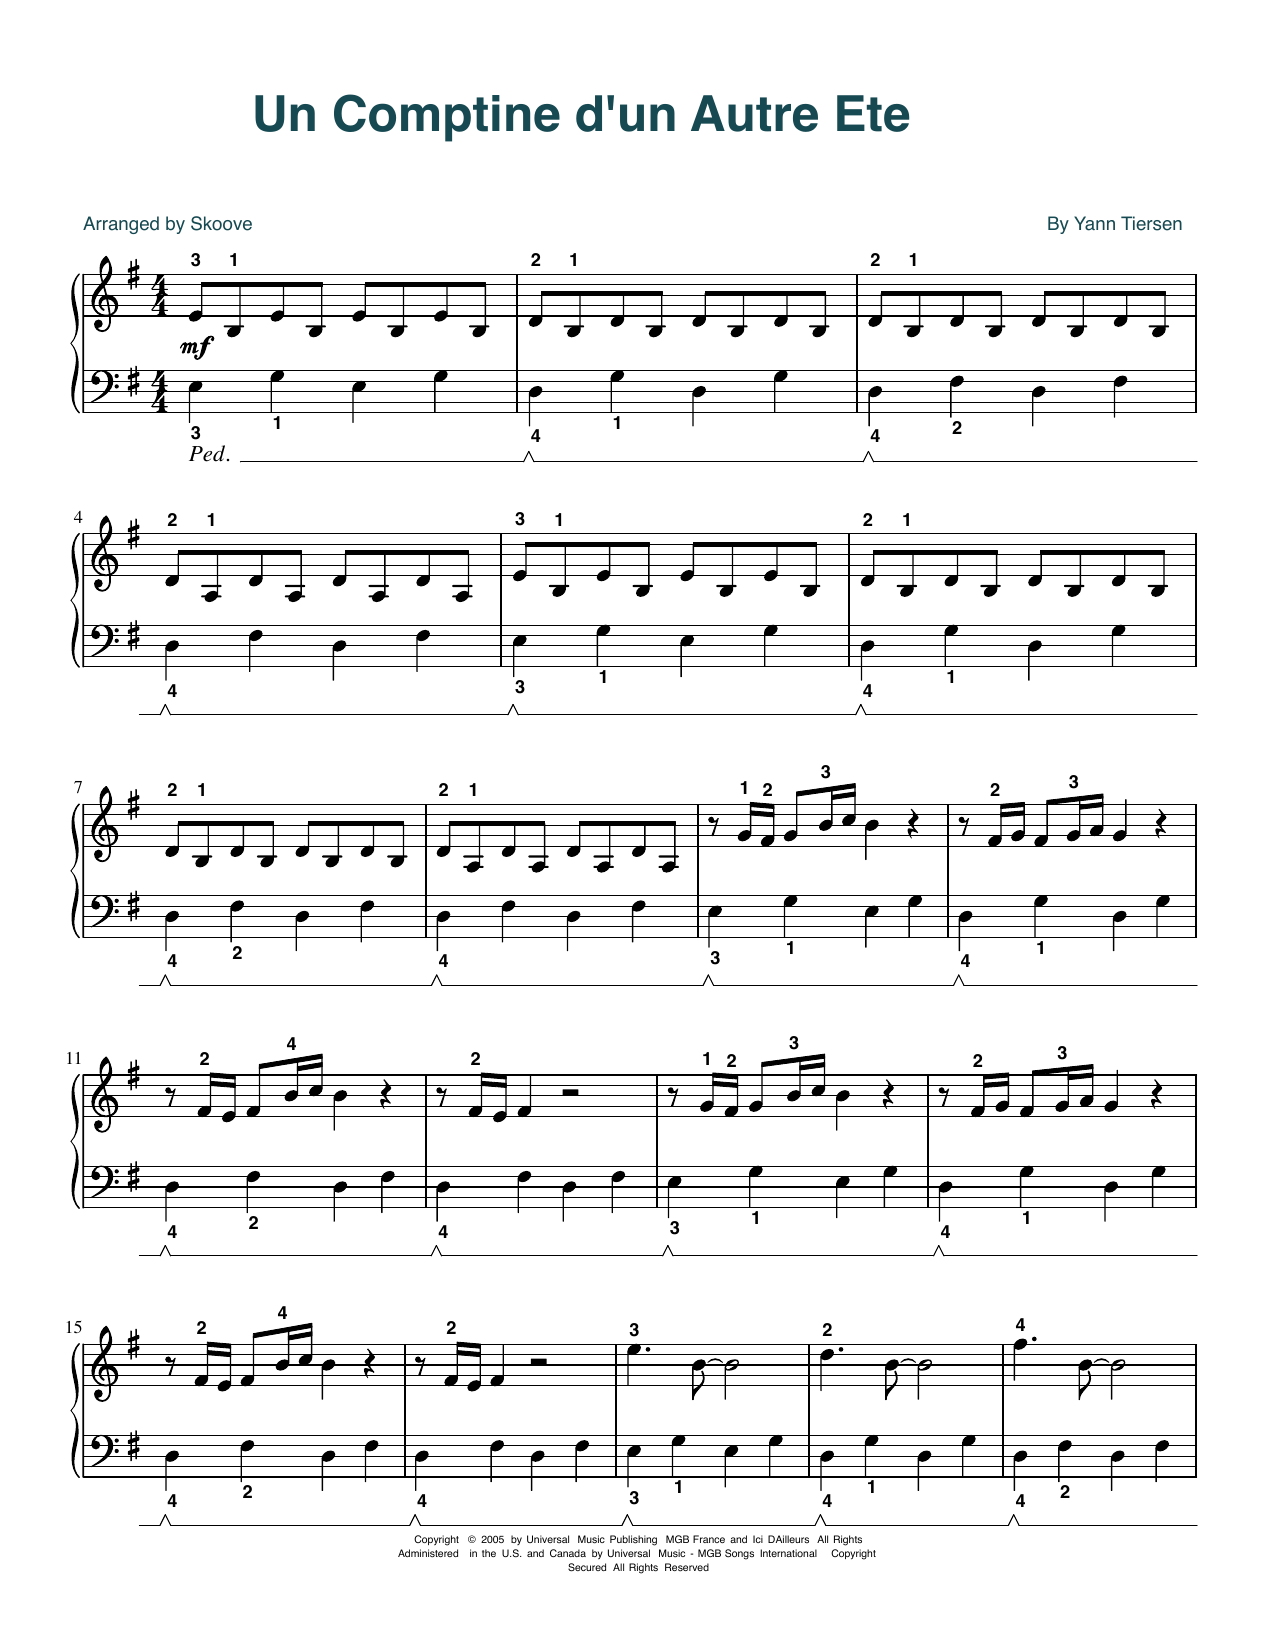 Yann Tiersen Comptine d'un autre été (arr. Skoove) sheet music notes and chords arranged for Easy Piano